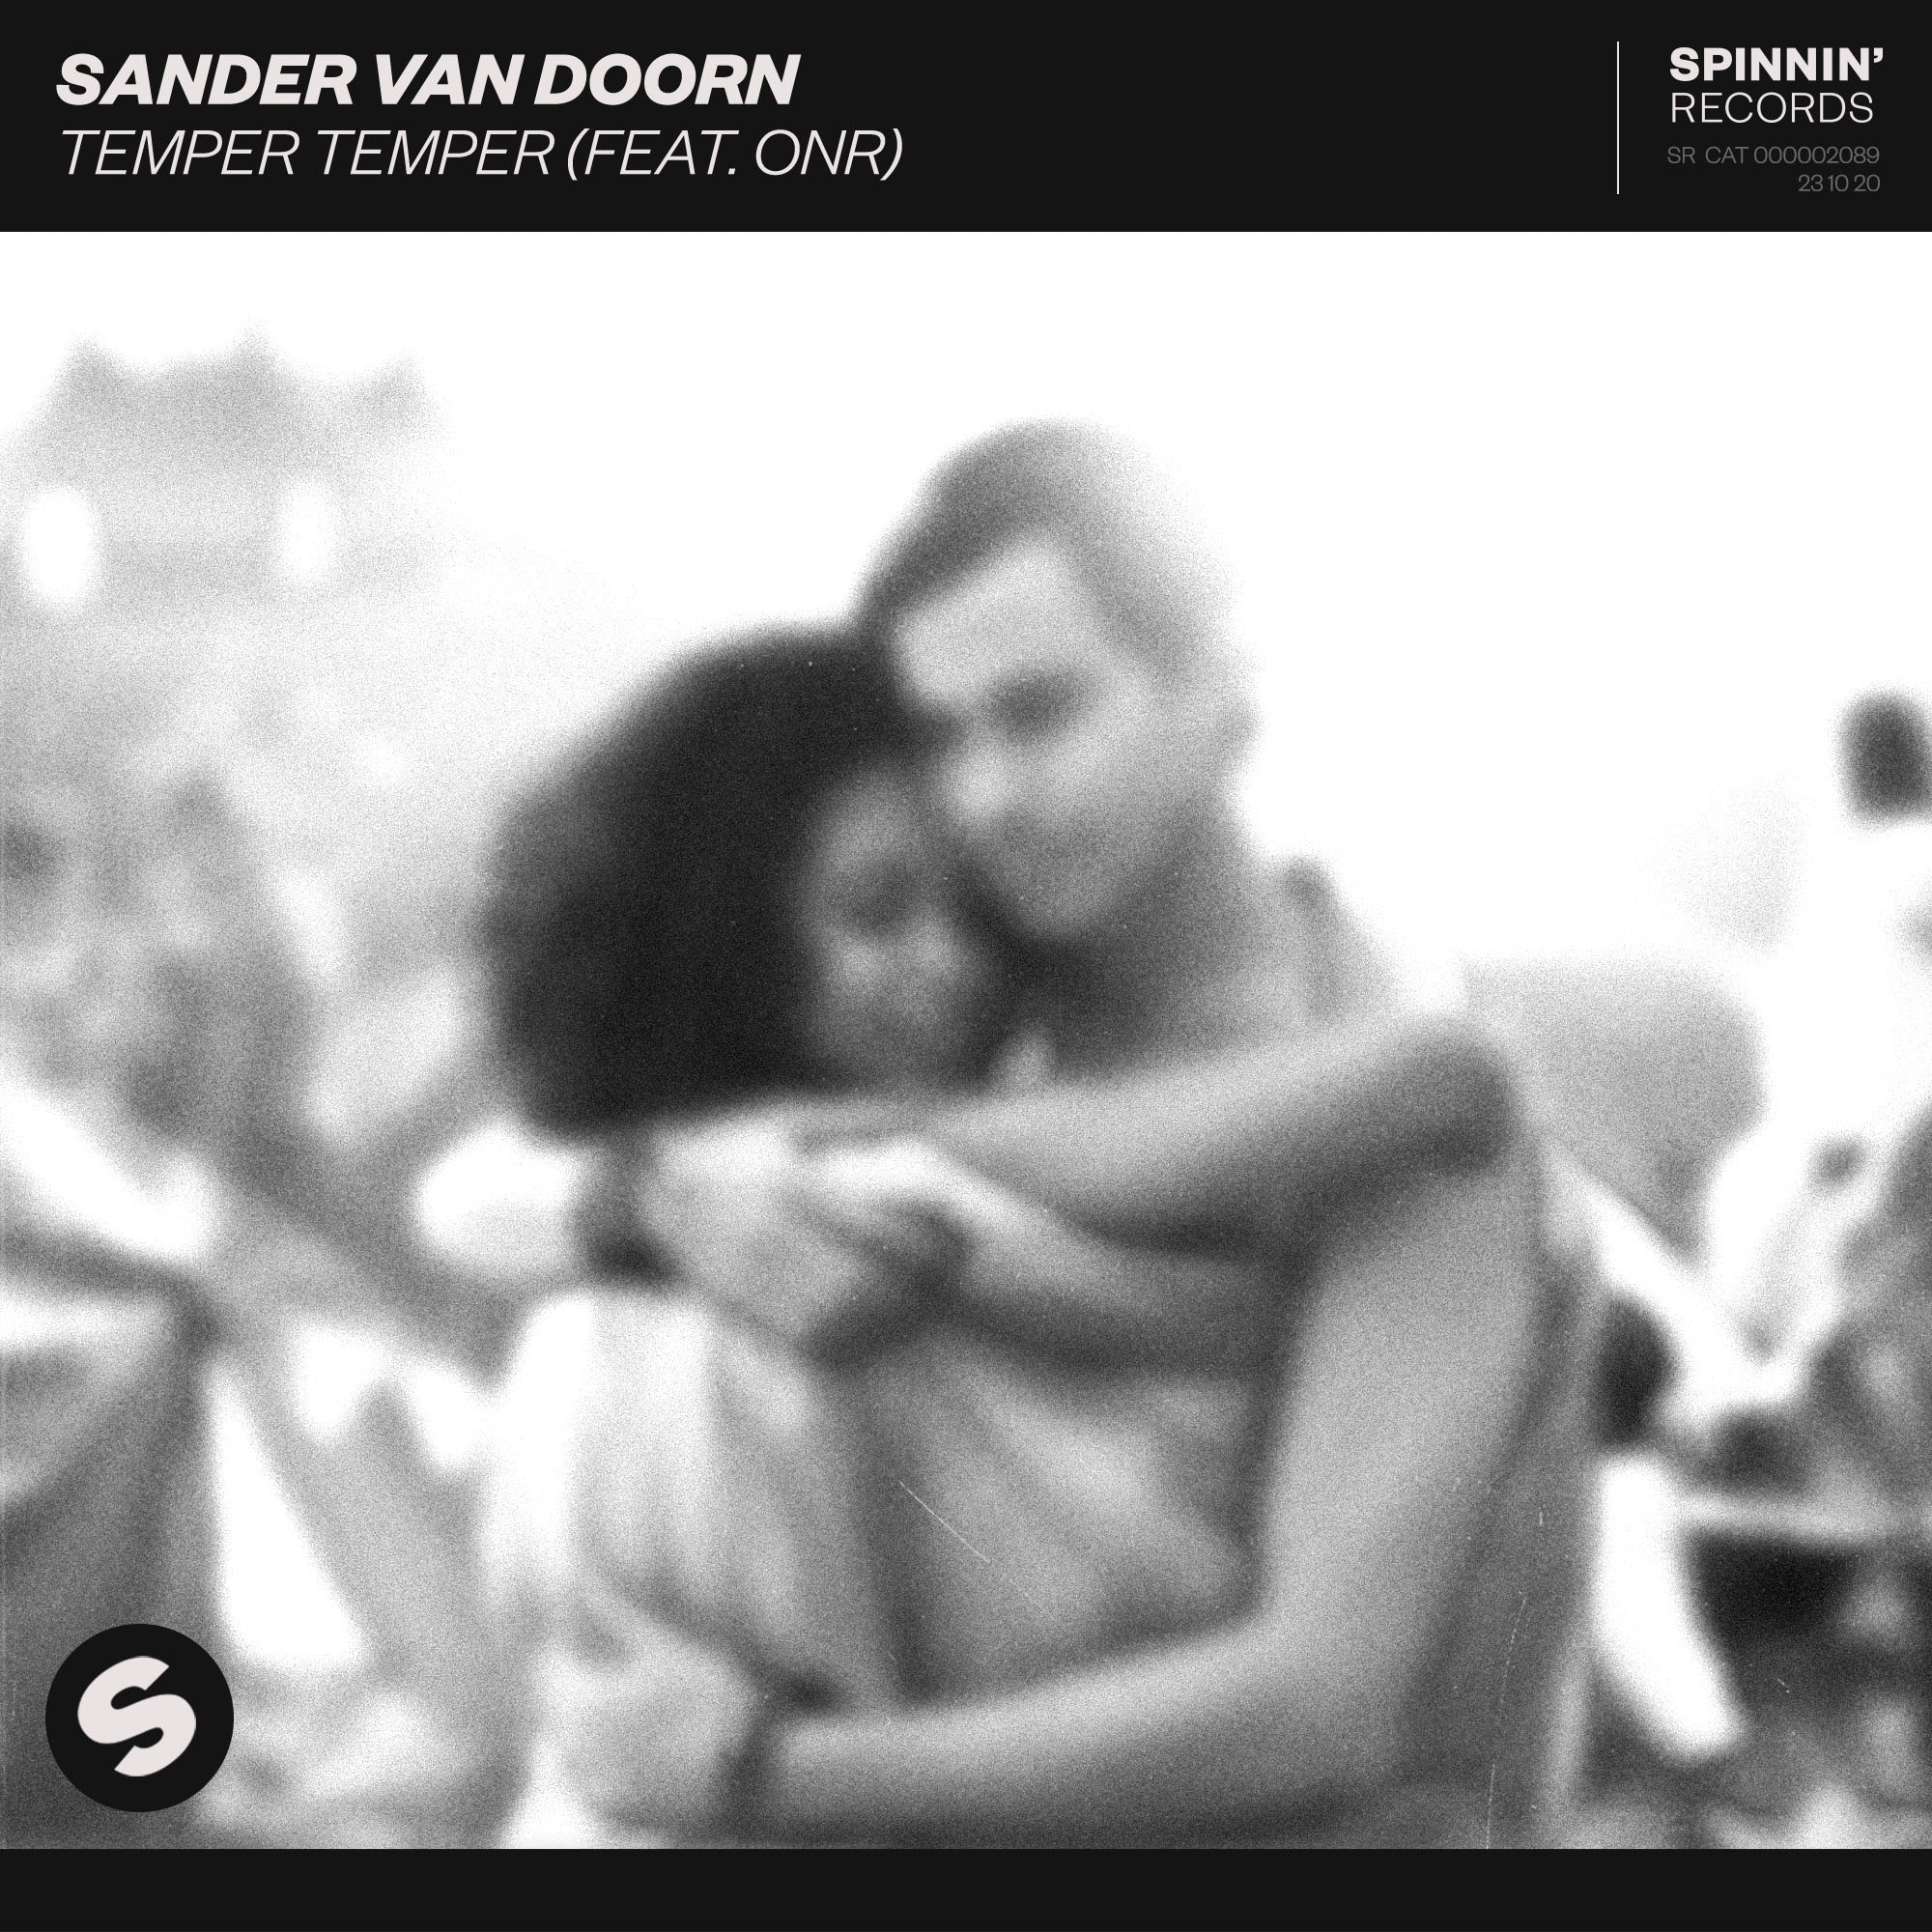 Sander van Doorn - Temper Temper (feat. ONR) - Single